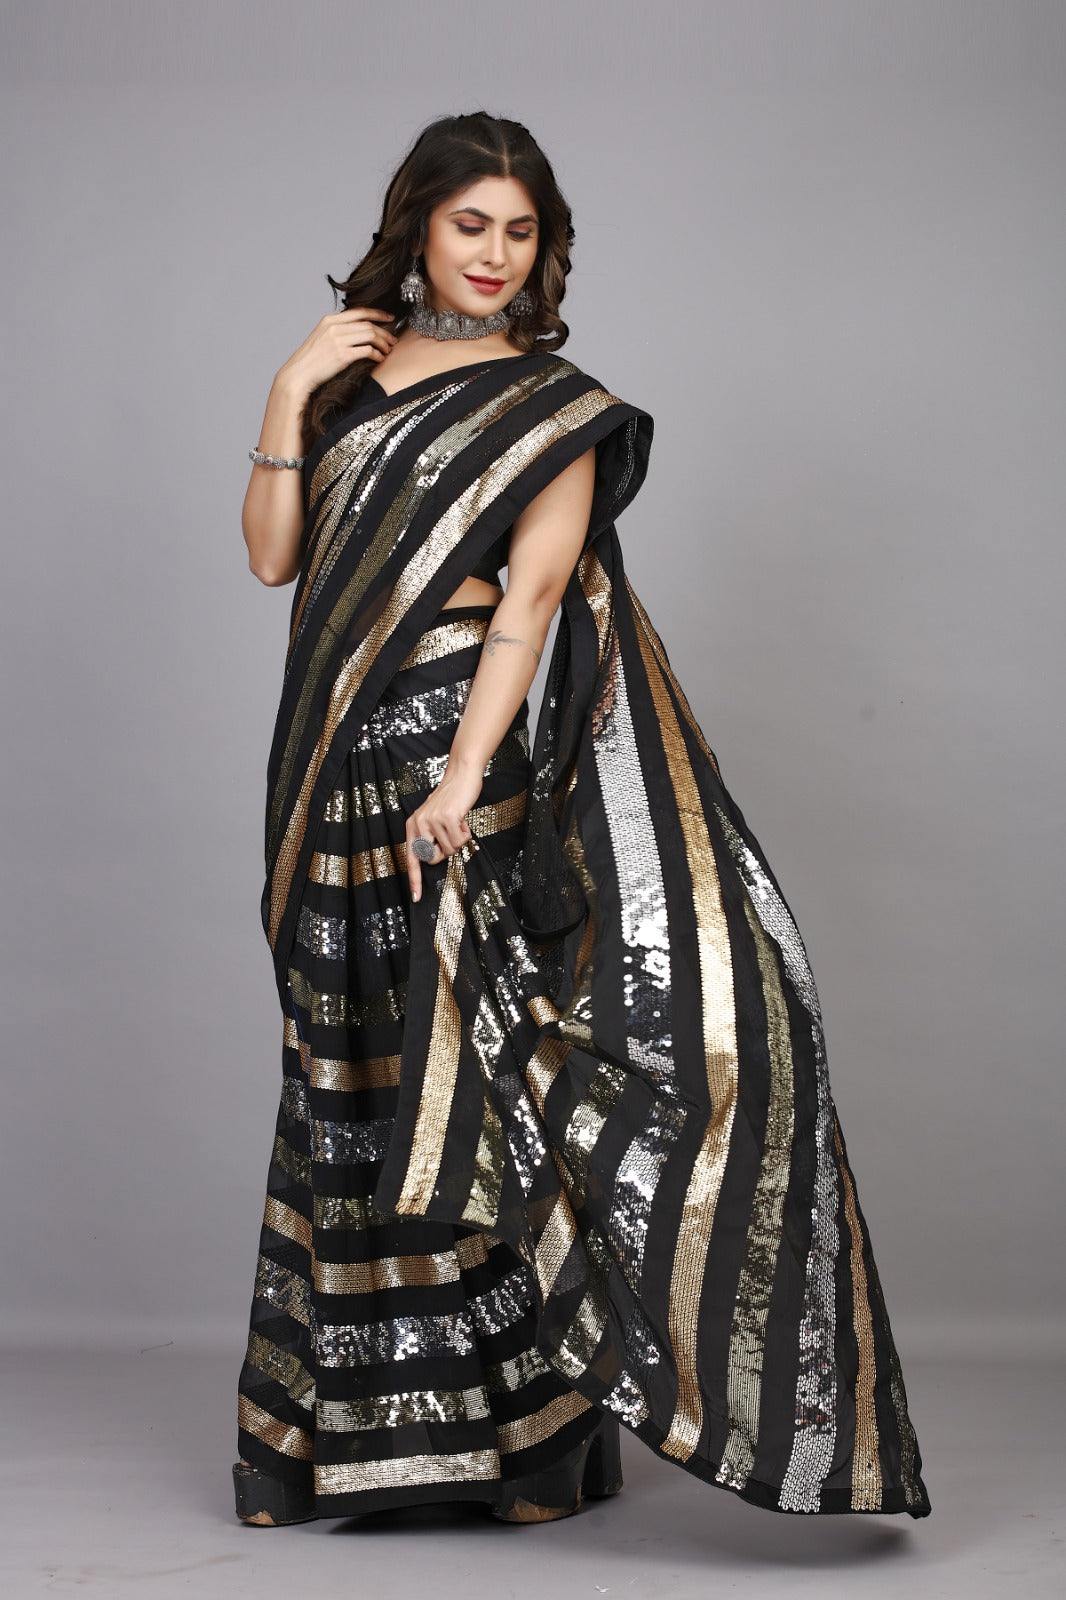 Hot Party Wear Saris In Sequin Work